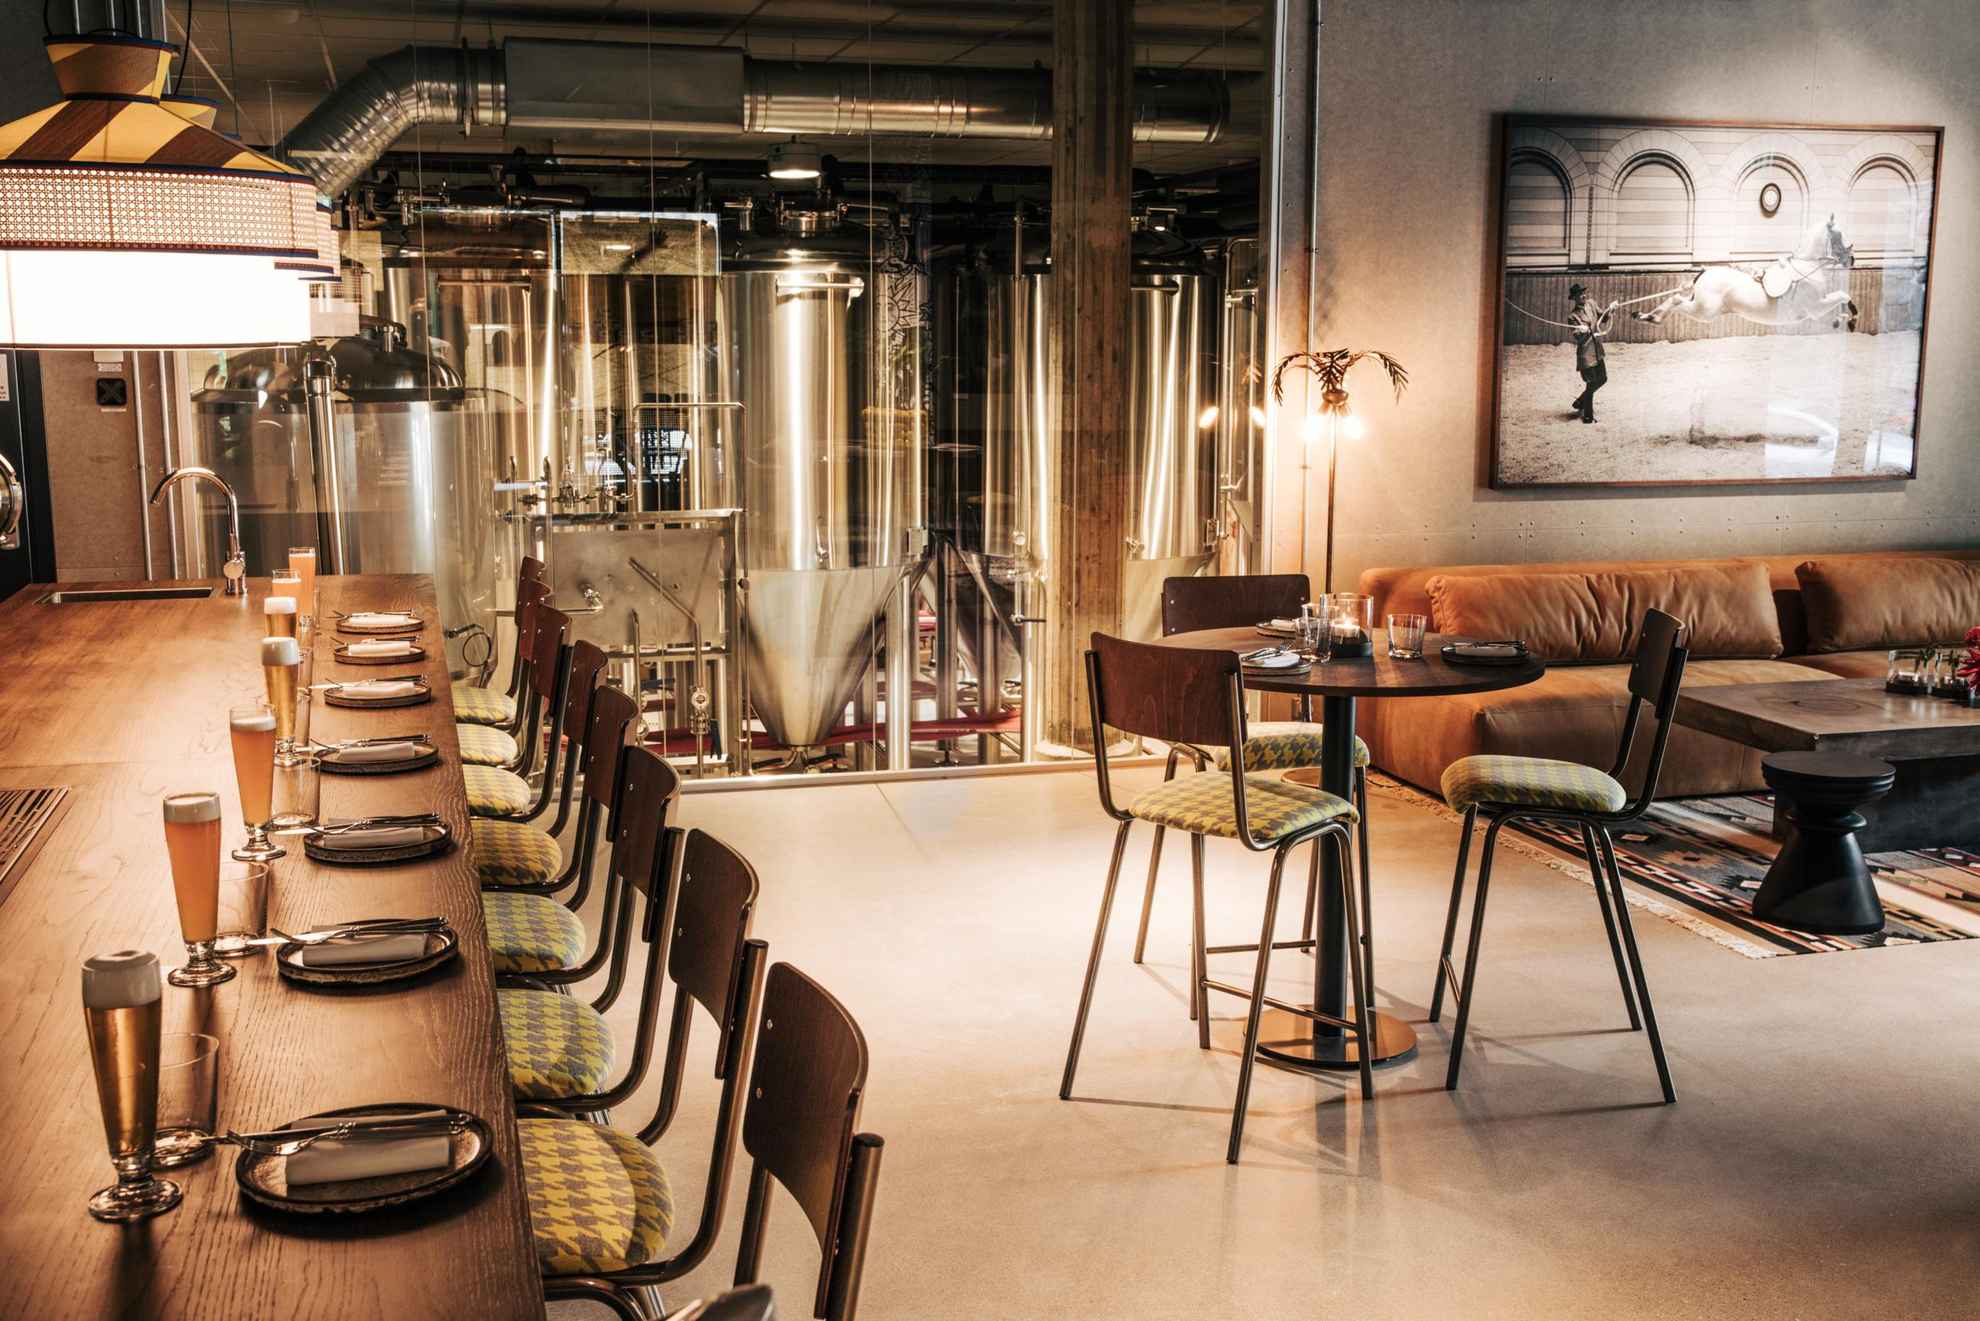 In een restaurant staat links de bar met glazen bier, rechts een gedekte tafel met drie stoelen en een bank. Op de achtergrond achter een glazen wand zie je een brouwerij.